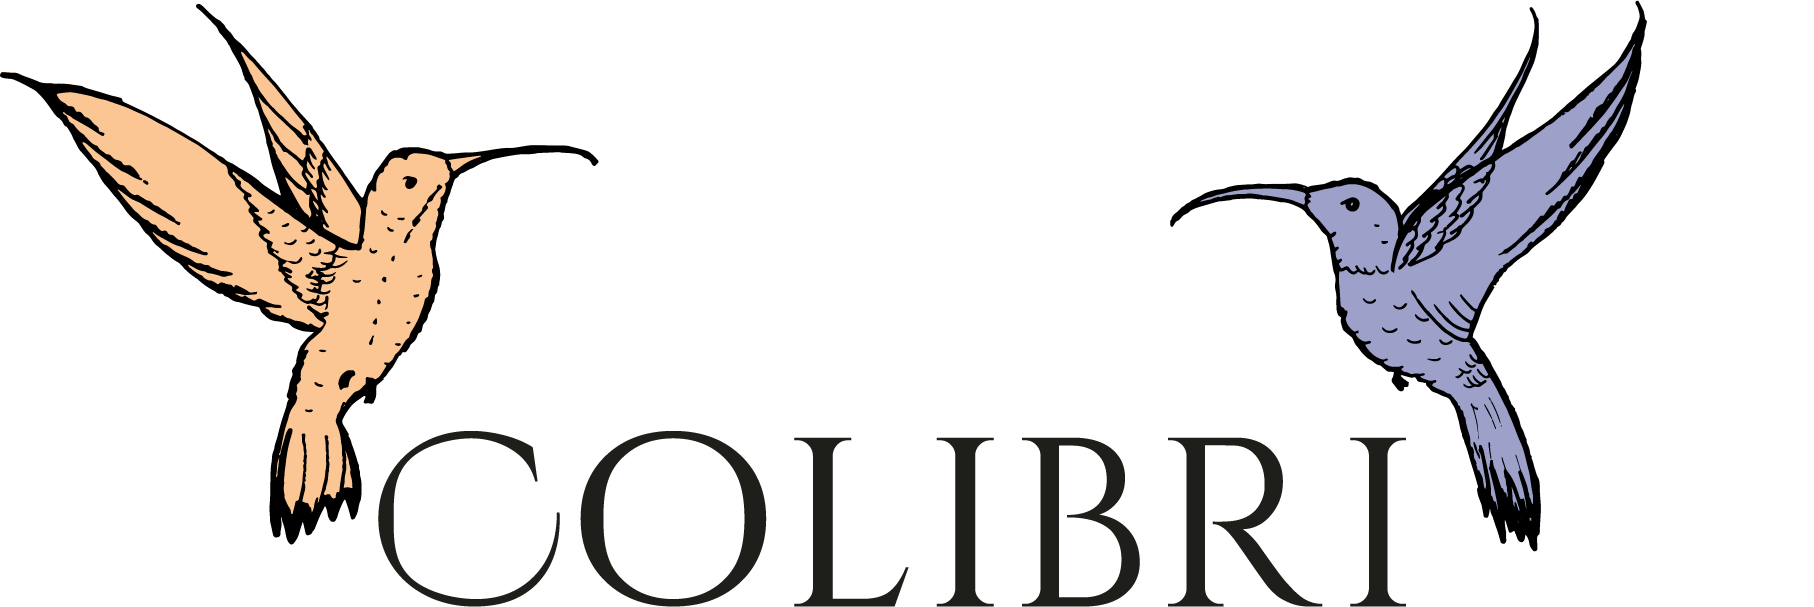 Colibri Coffee Company